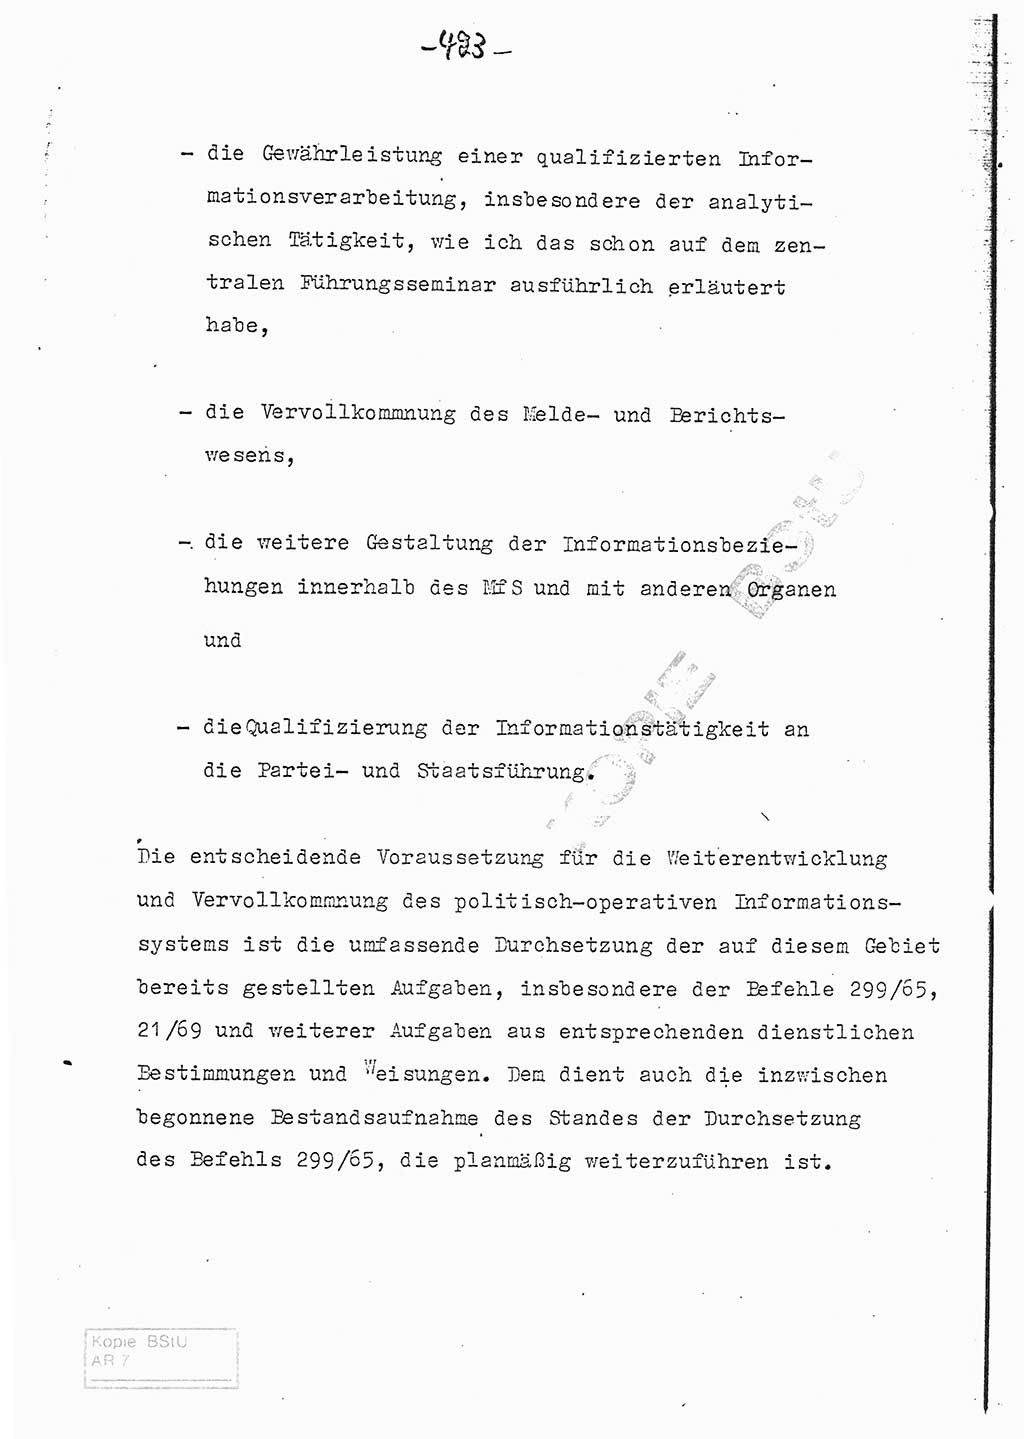 Referat (Entwurf) des Genossen Minister (Generaloberst Erich Mielke) auf der Dienstkonferenz 1972, Ministerium für Staatssicherheit (MfS) [Deutsche Demokratische Republik (DDR)], Der Minister, Geheime Verschlußsache (GVS) 008-150/72, Berlin 25.2.1972, Seite 423 (Ref. Entw. DK MfS DDR Min. GVS 008-150/72 1972, S. 423)